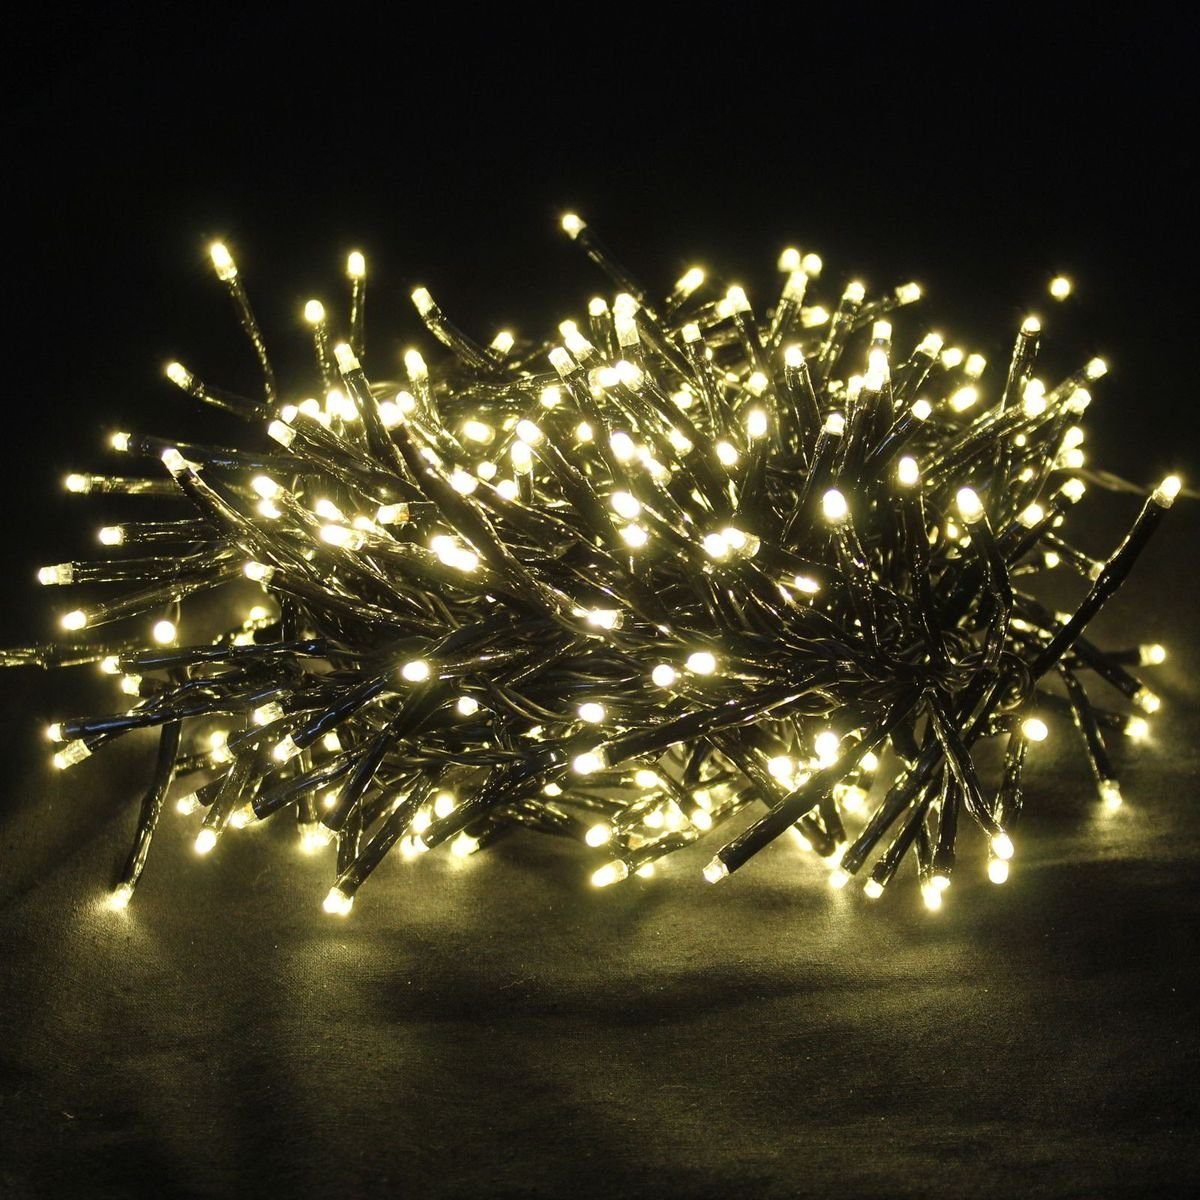 LEX Lichterkette dekorative warmweiße 192LED Büschel Cracker Lichterkette Weihnachten, für Innen- und Außenbereiche